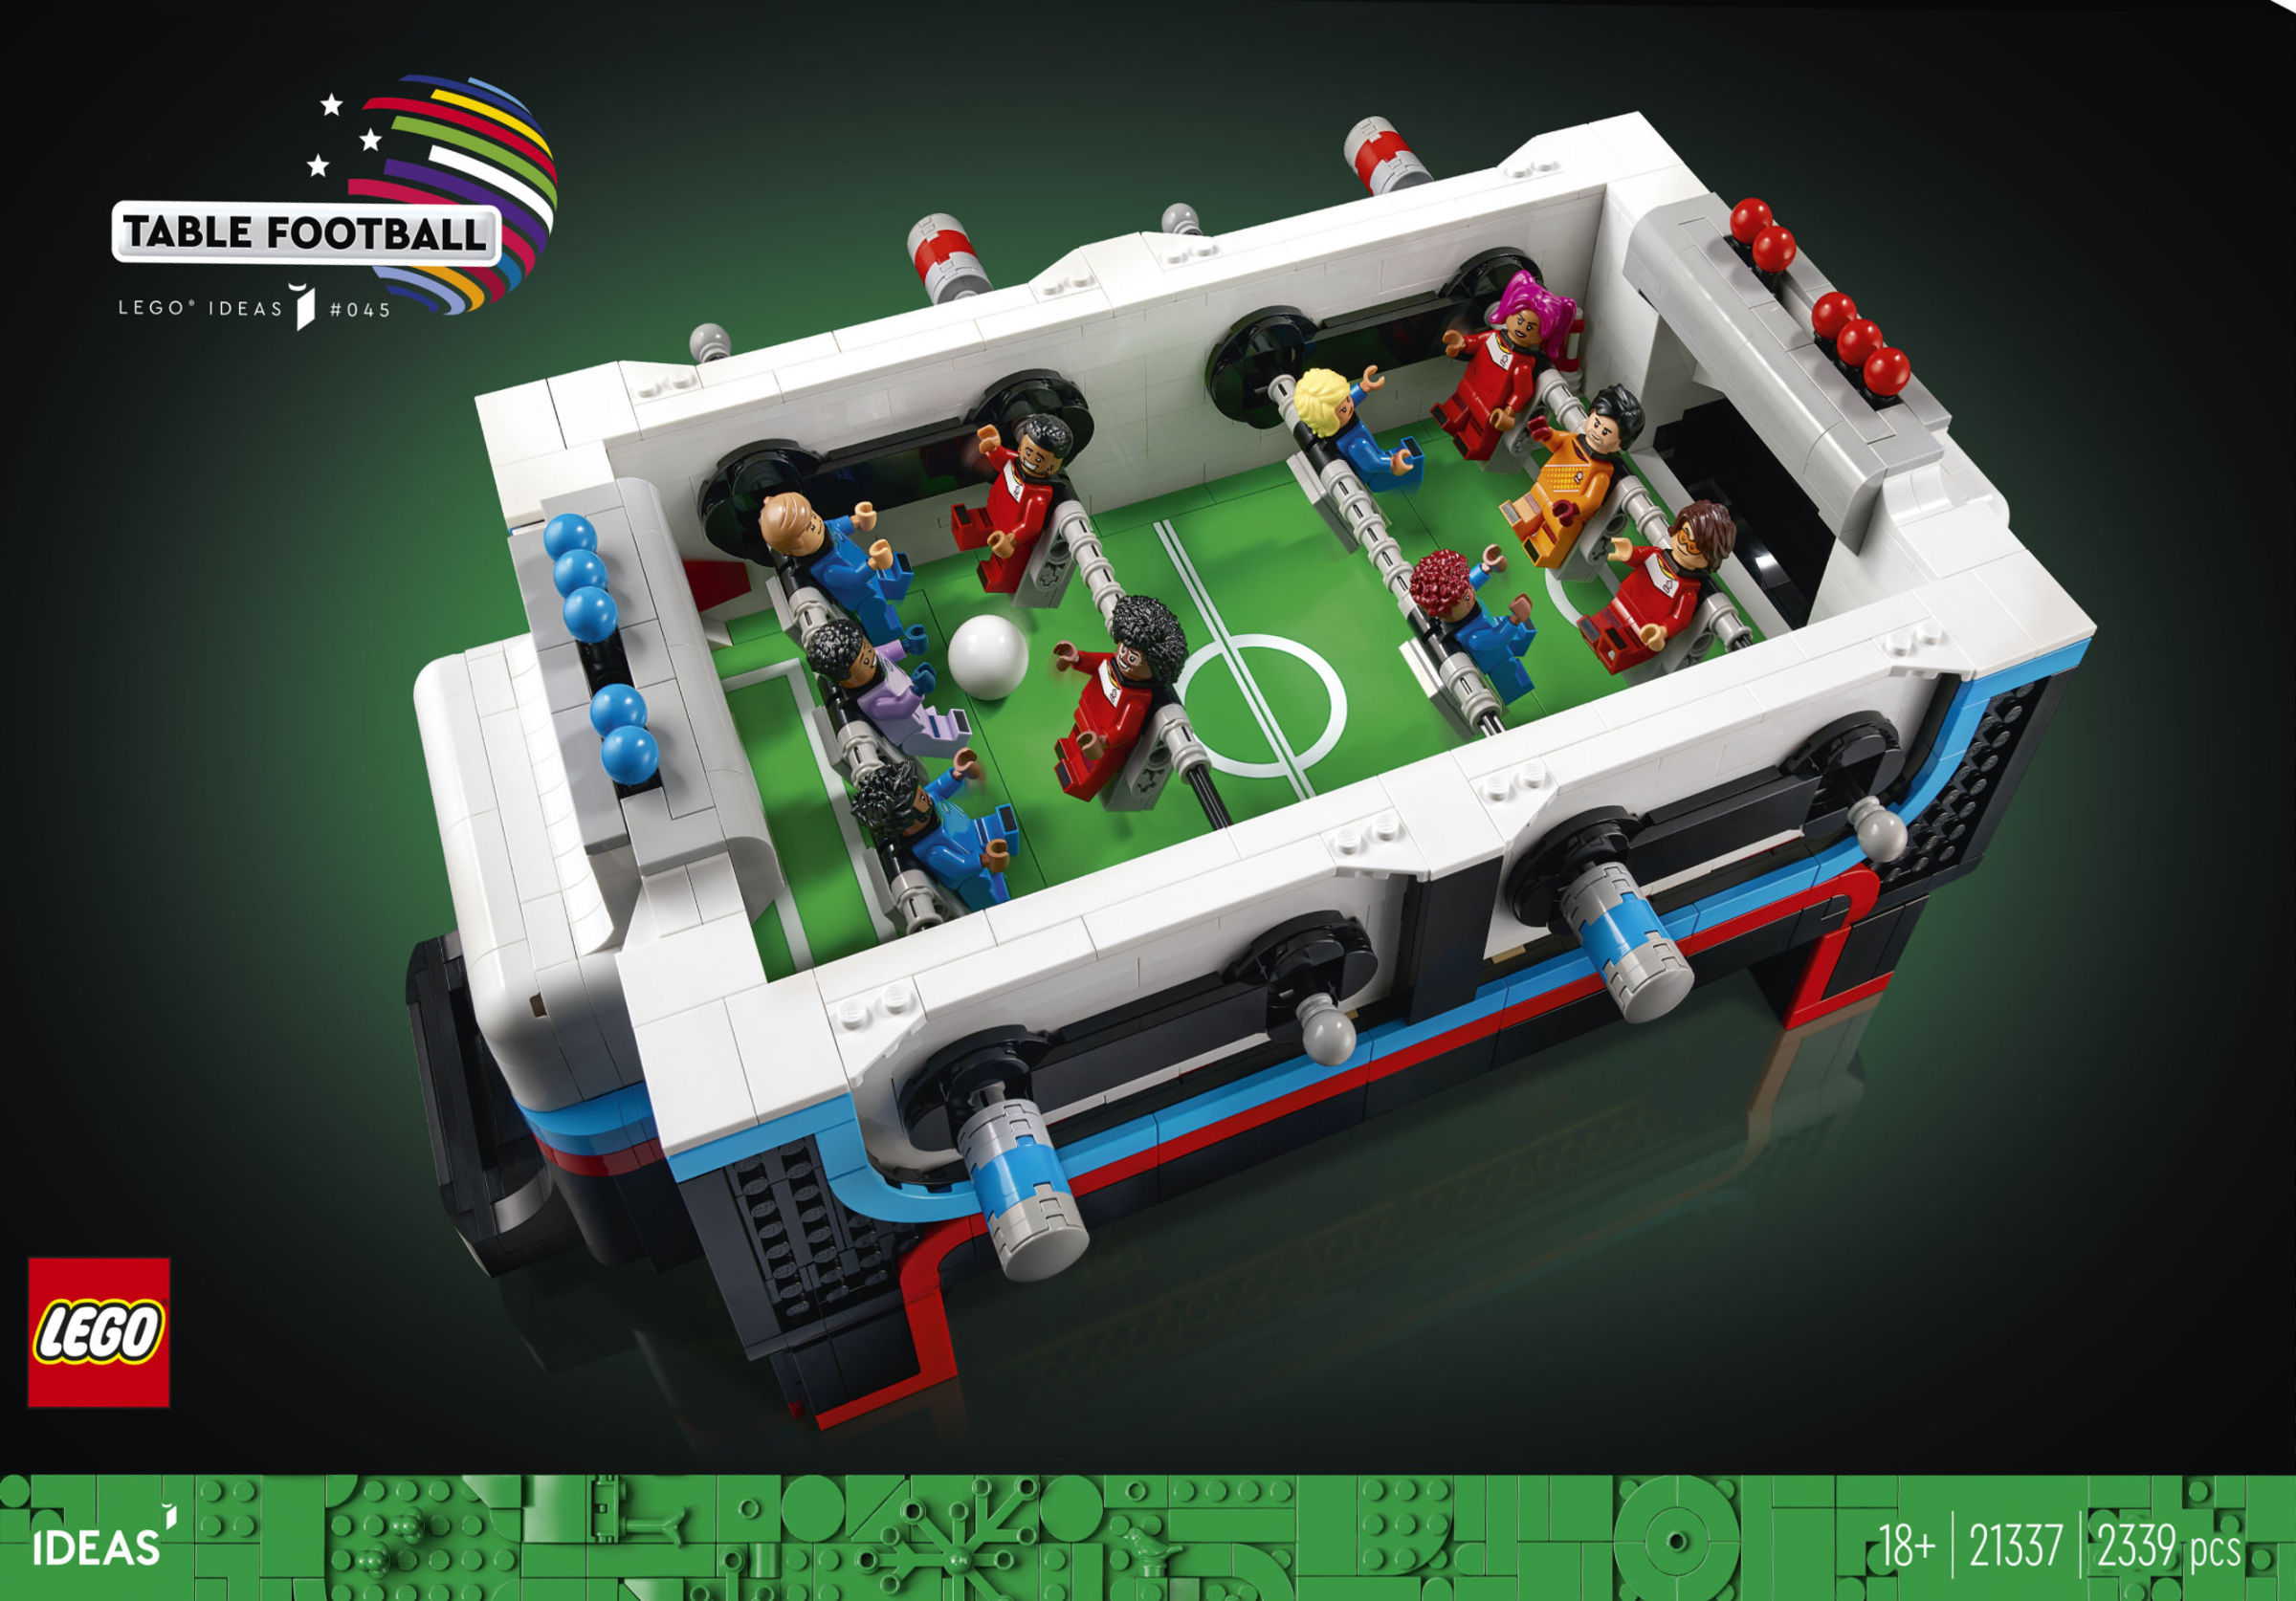 LEGO Ideas reveals 21337 Table Football, a 2,300-piece playable